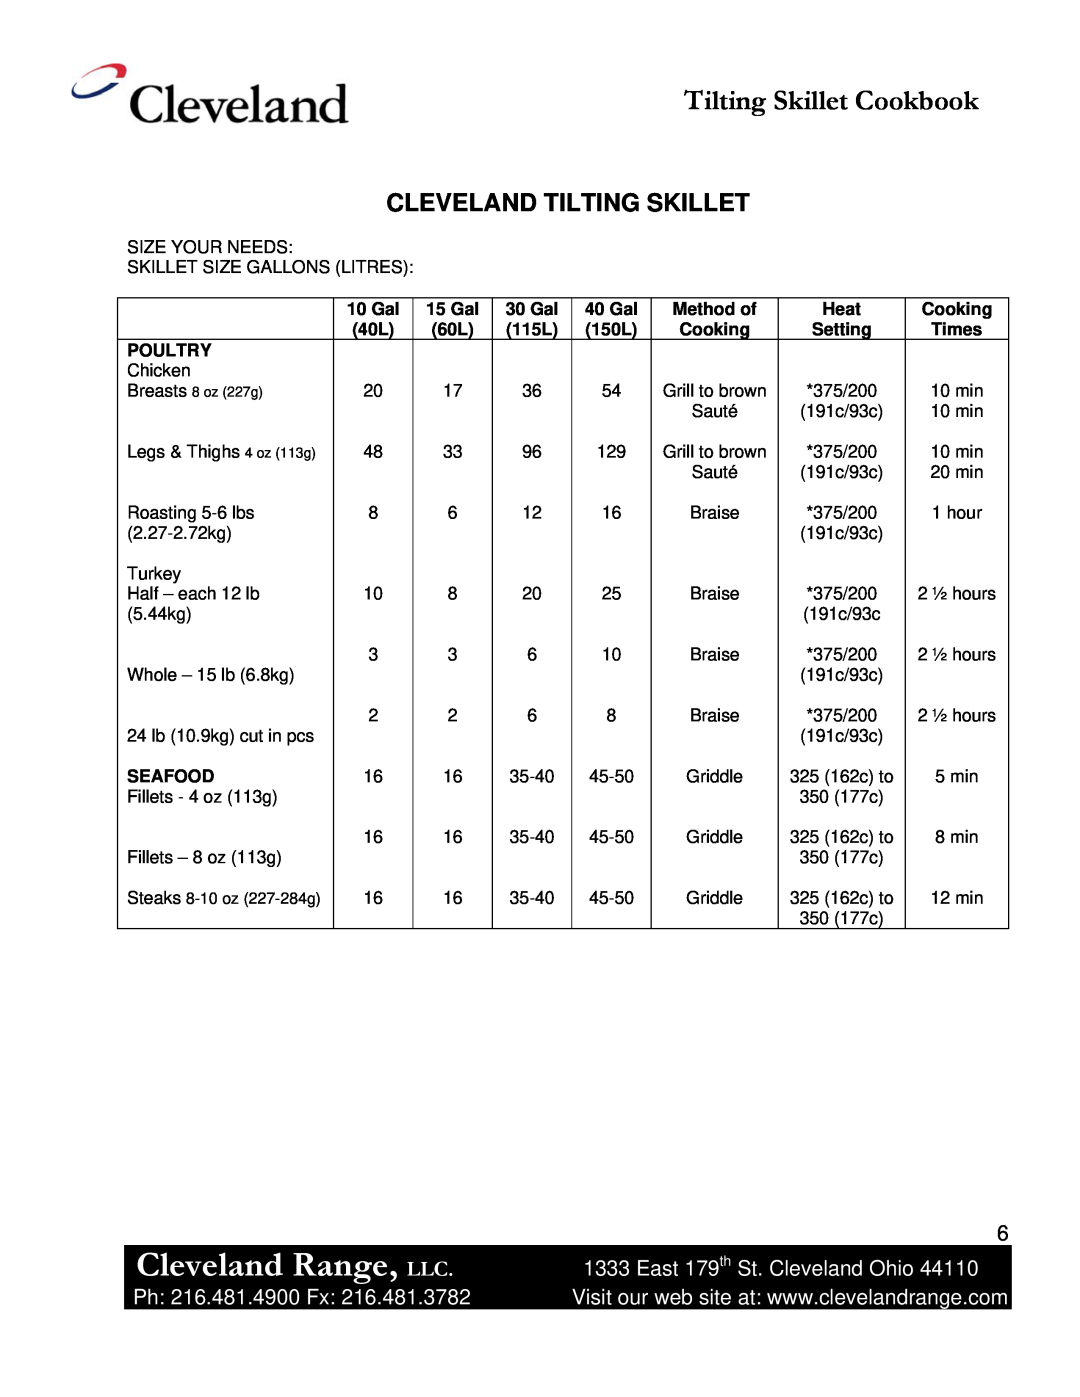 Cleveland Range Skillet/Braising manual Cleveland Range, LLC, Tilting Skillet Cookbook, Cleveland Tilting Skillet 